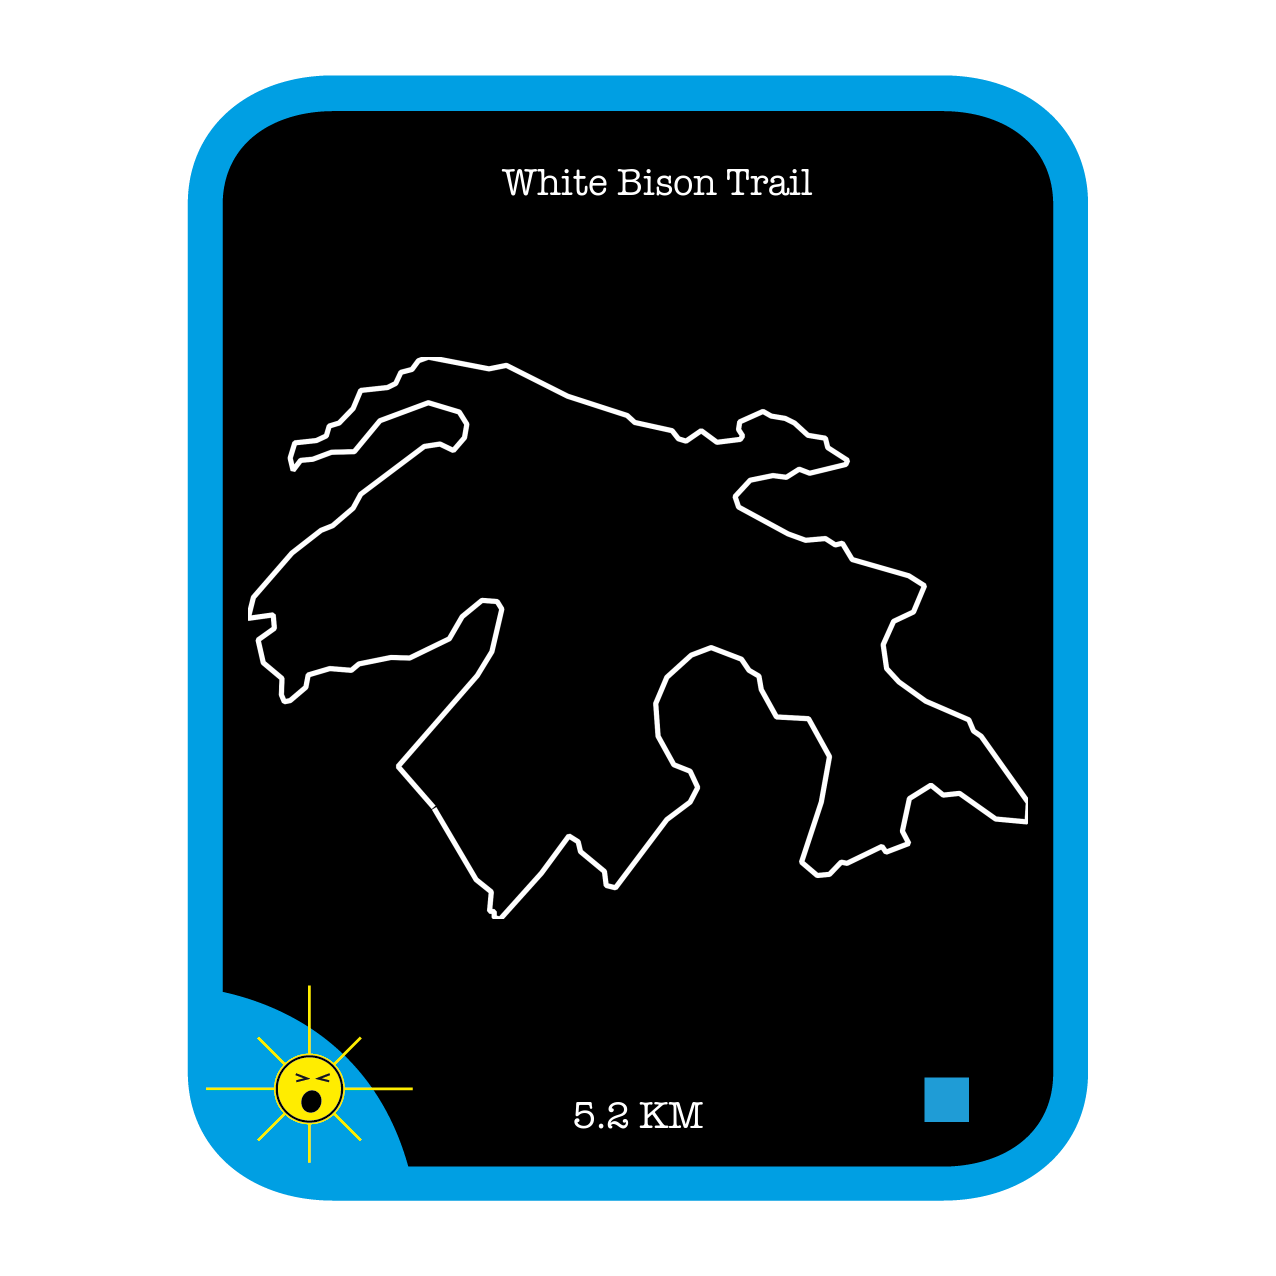 White Bison Trail